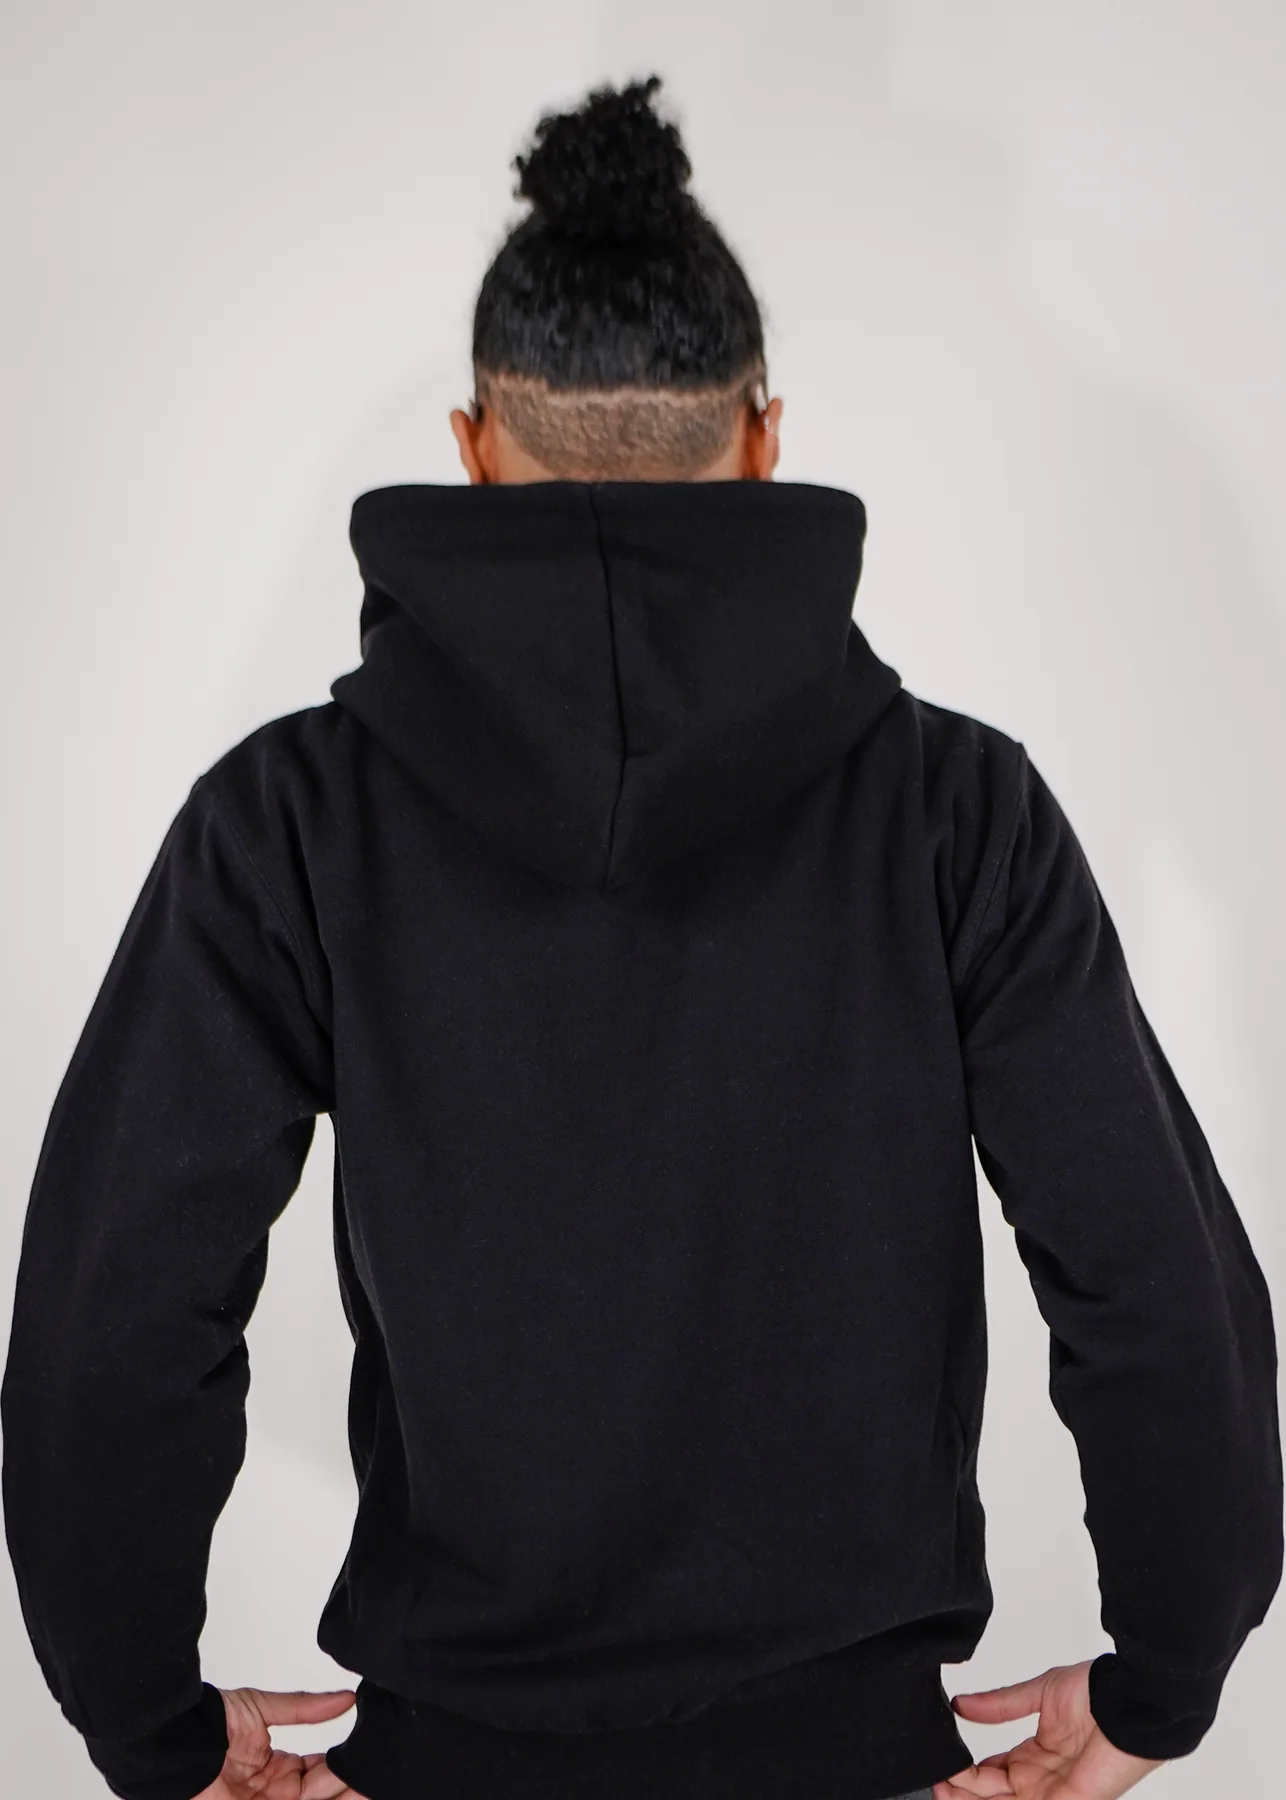 Heavy Blend Zip-Up Fleece Hooded SweatShirt Black2